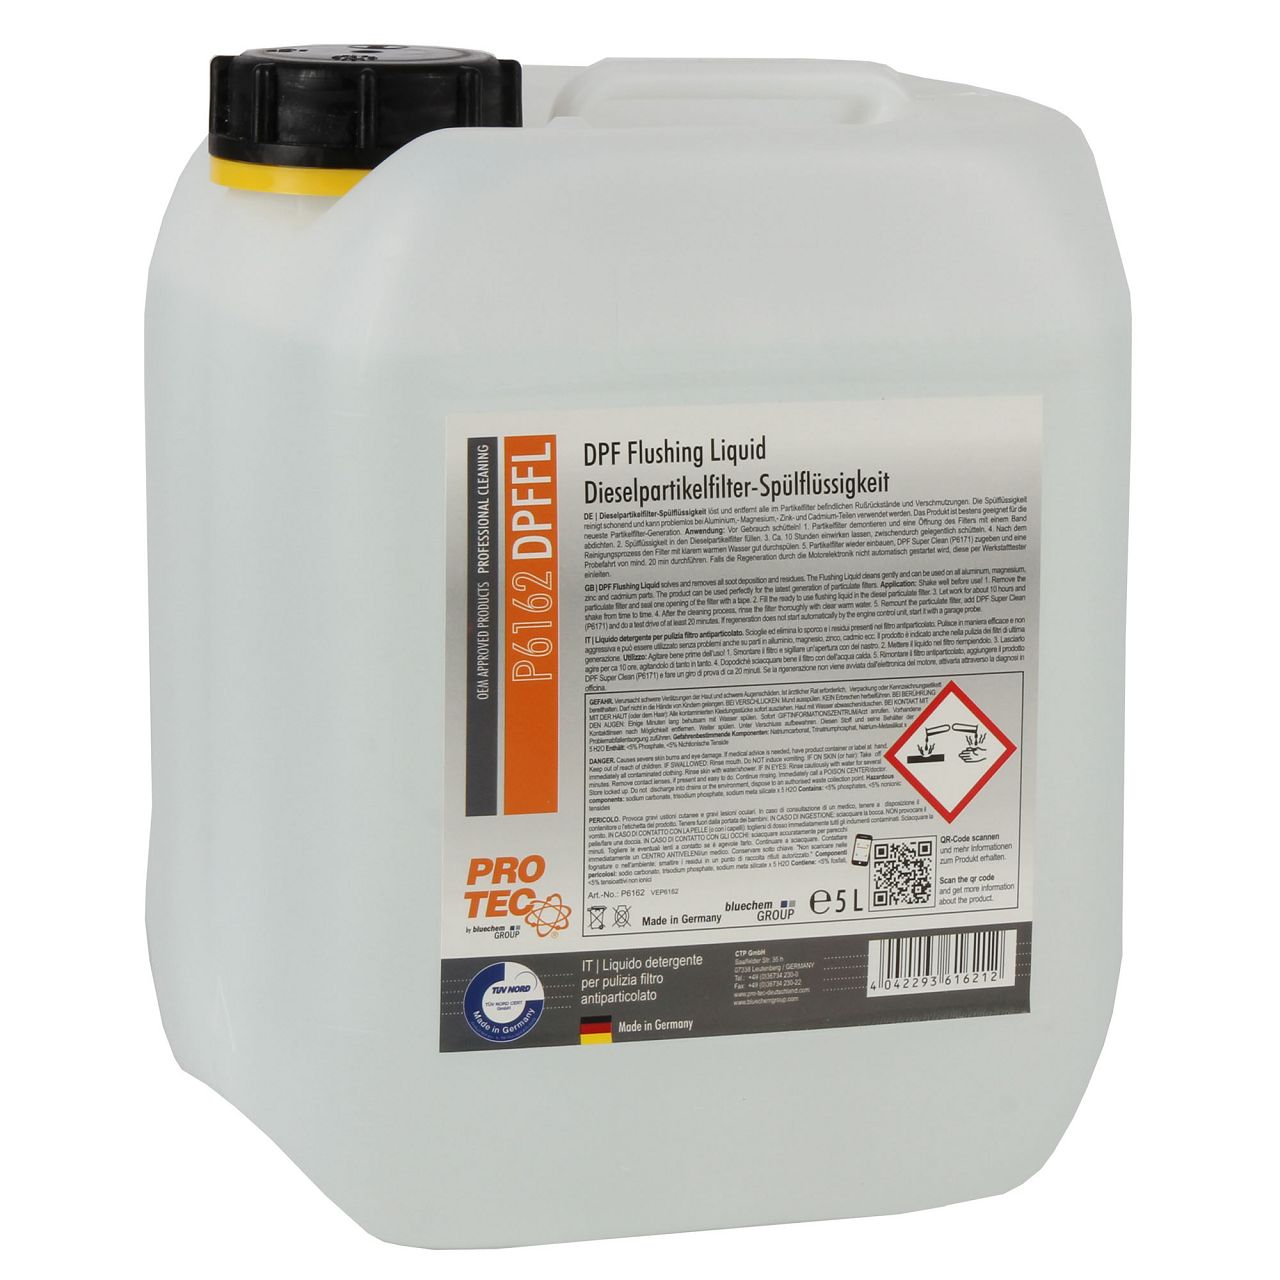 PROTEC DPF Flushing Liquid Dieselpartikelfilter-Spülflüssigkeit Reiniger 5L